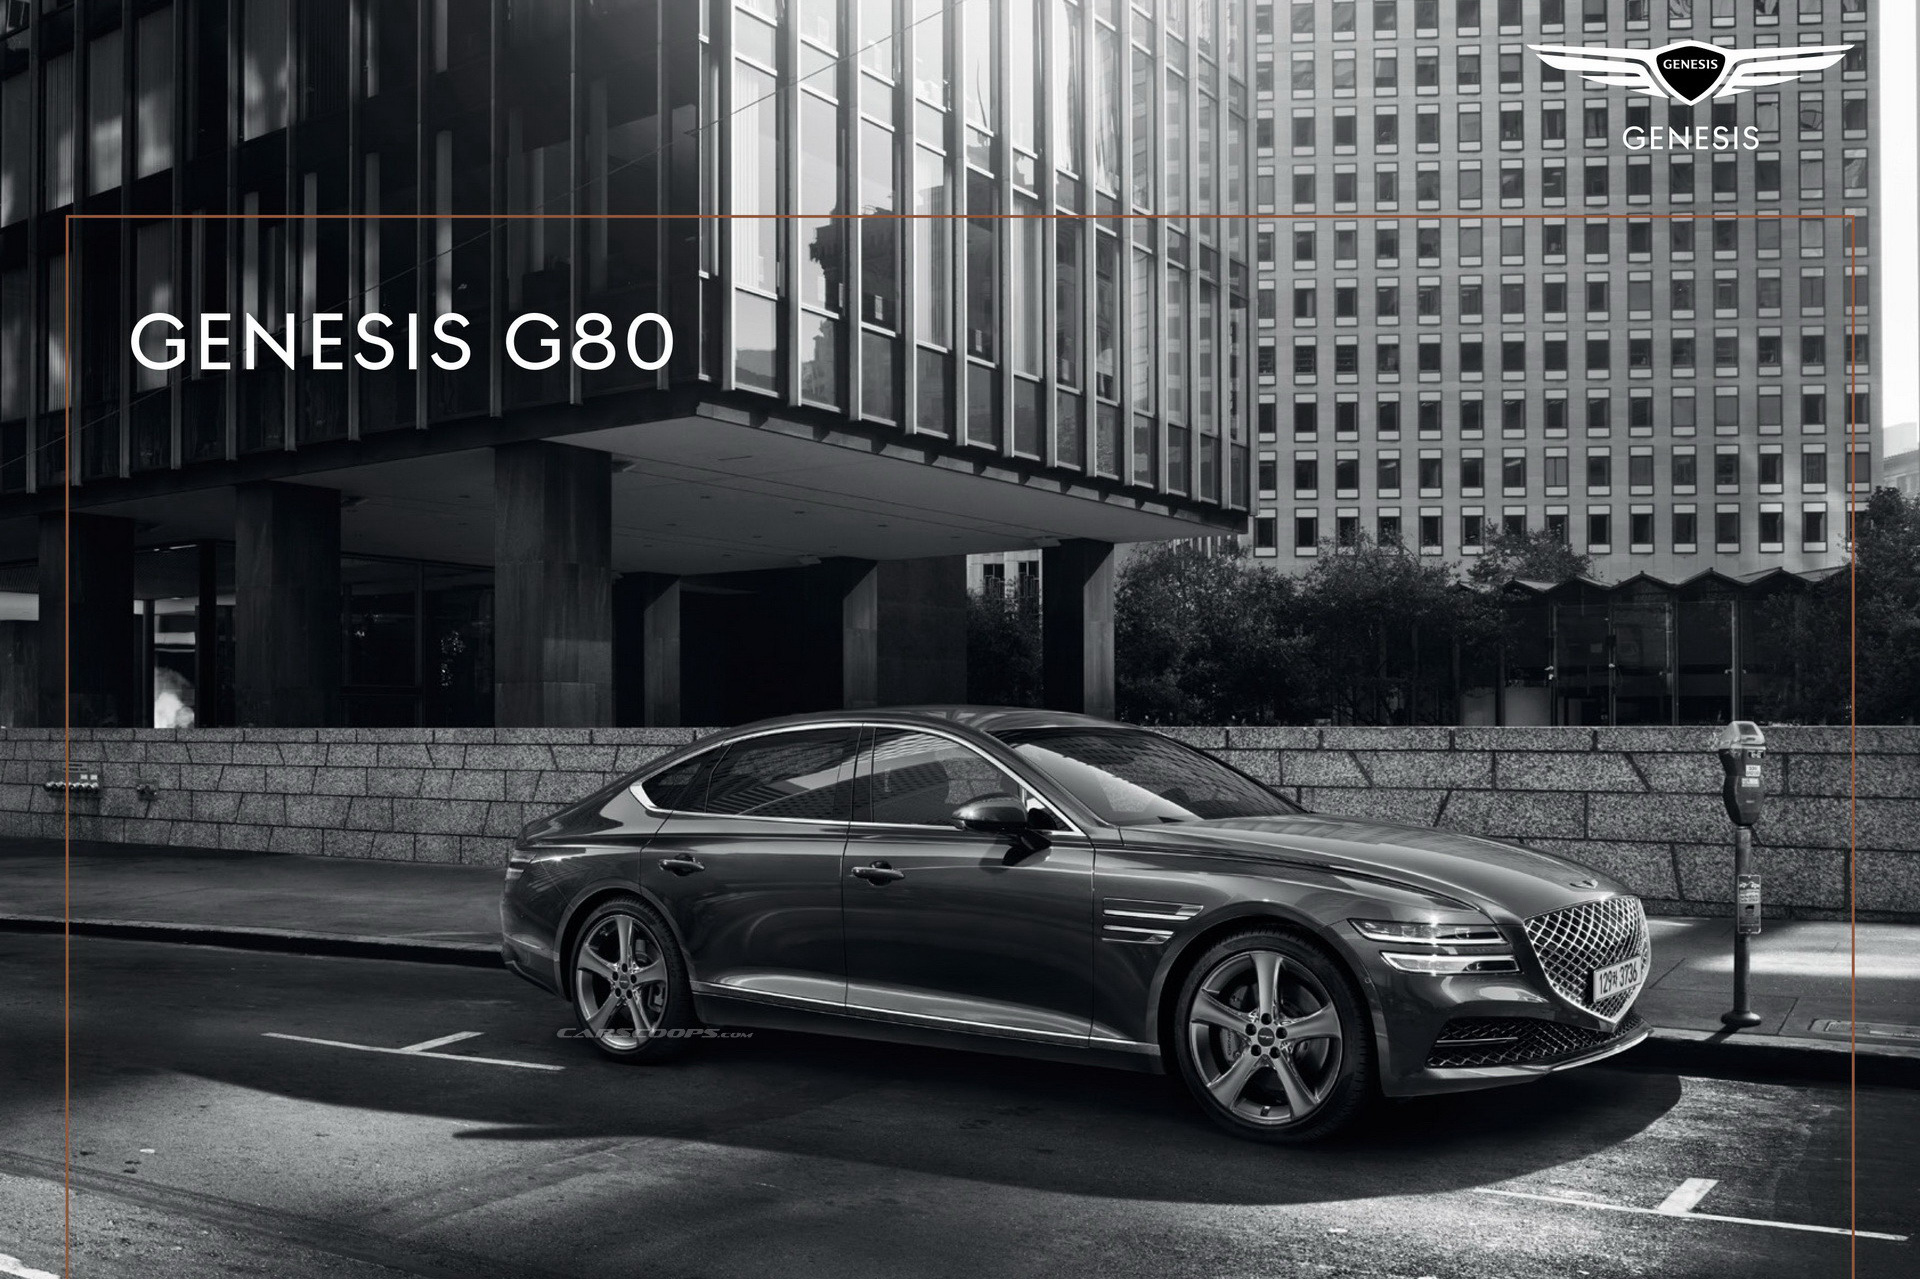 Genesis G80 khoe trọn bộ catalog: Toàn tiếng Hàn khó hiểu nhưng xem đã mắt